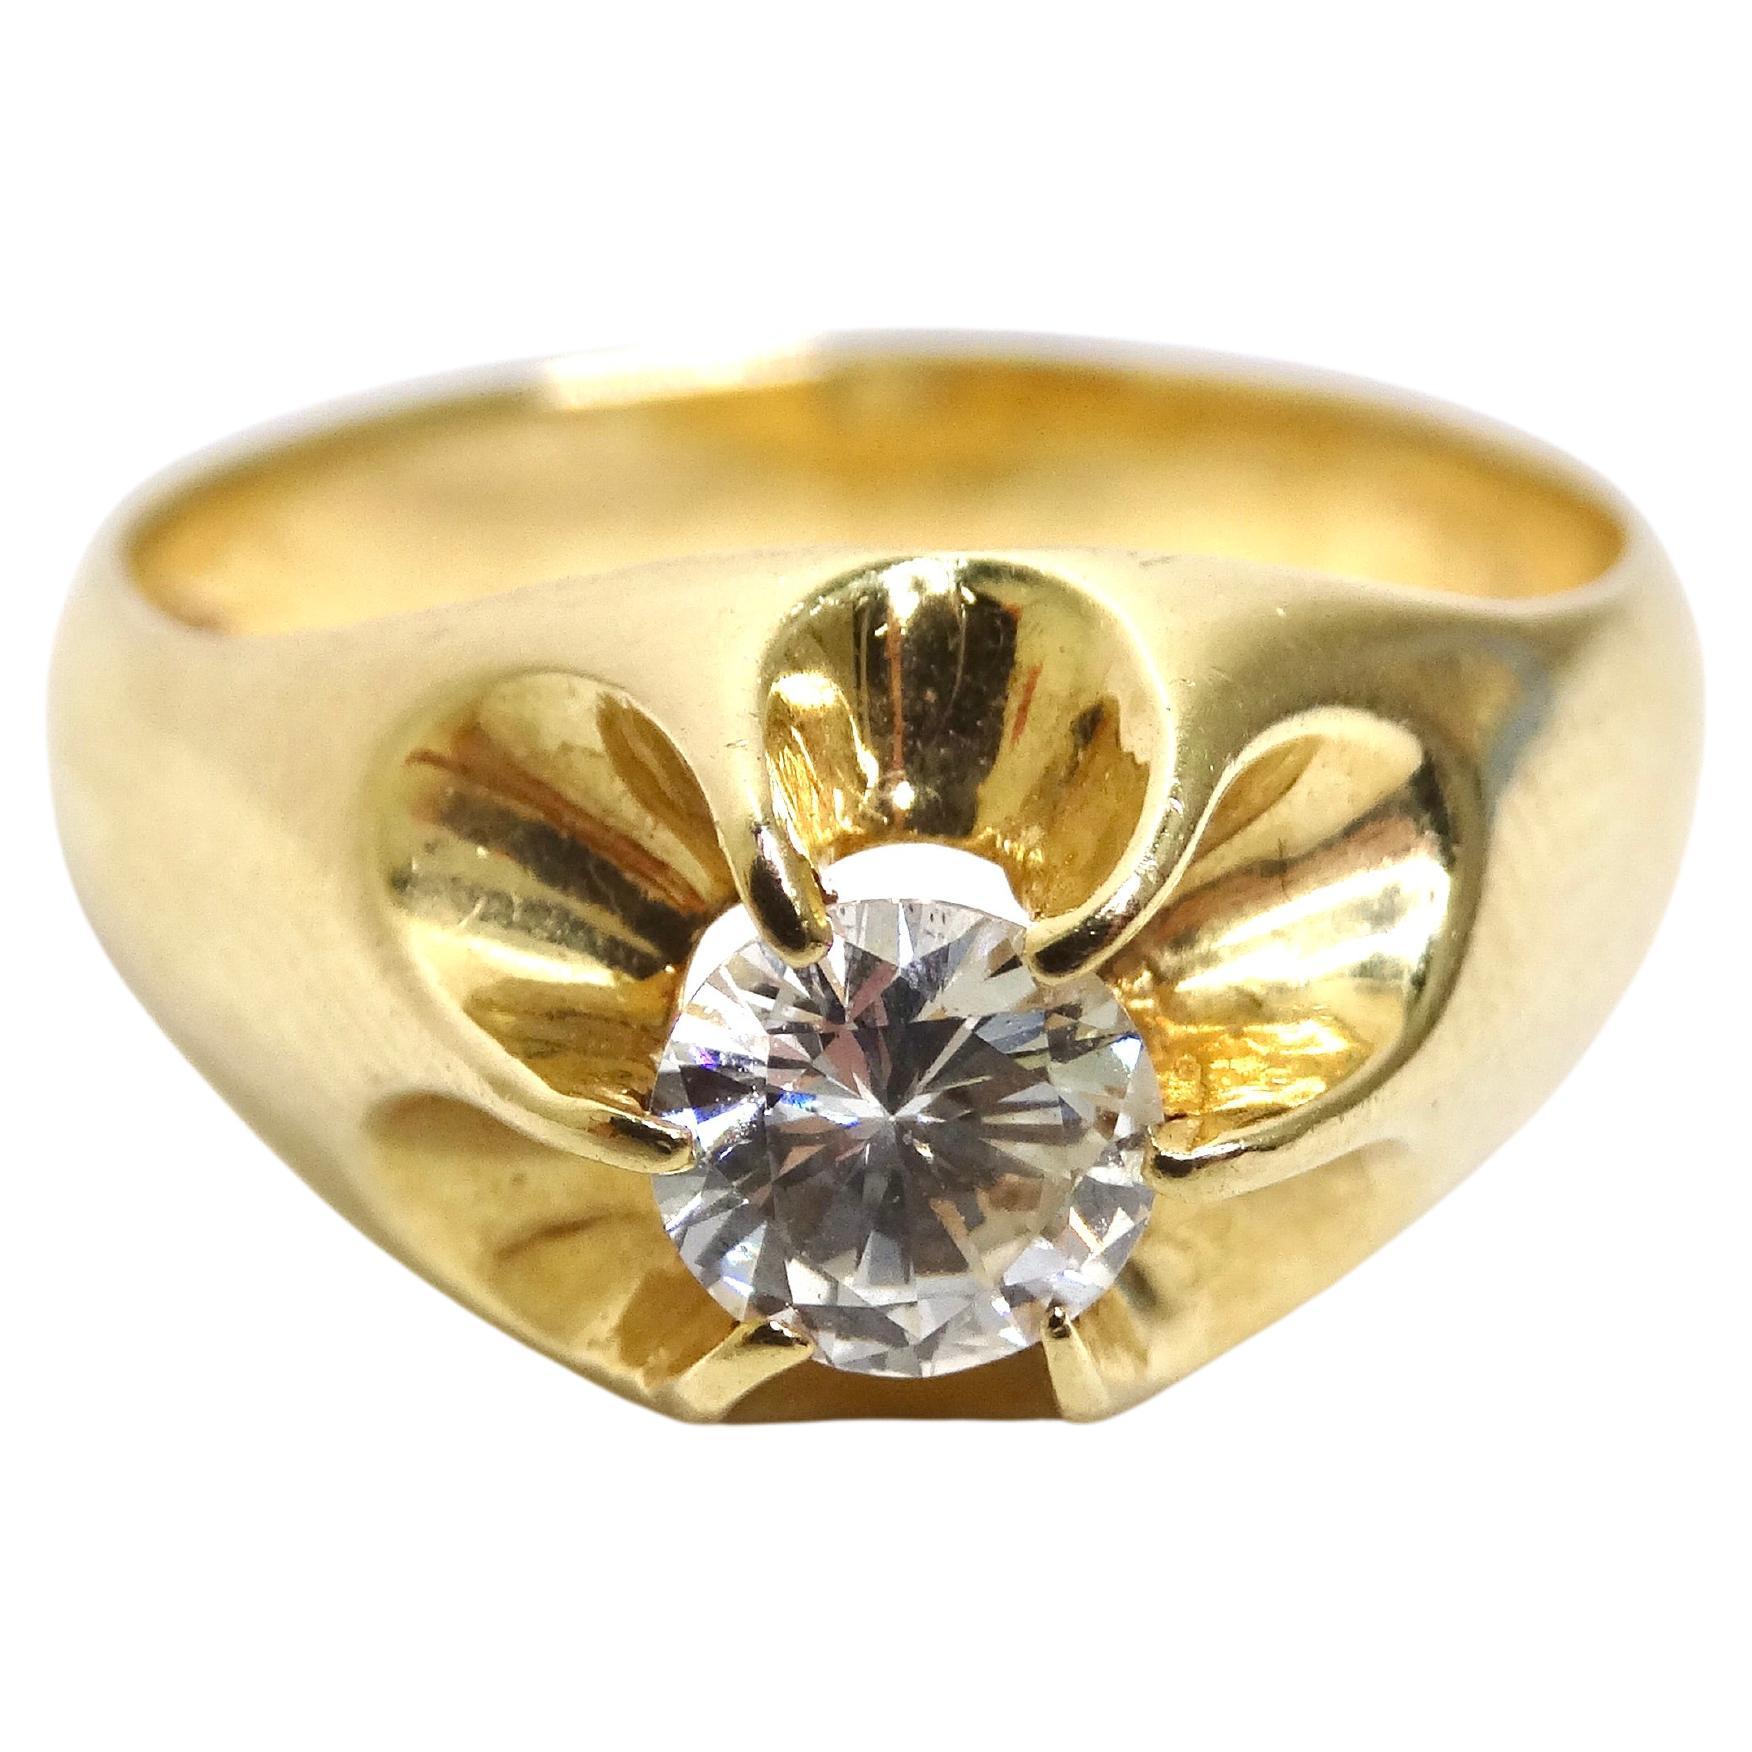 Dies ist Schlichtheit und Eleganz in einem Ring vereint. Die schönen Details dieses Rings werden Sie begeistern. Dieser Ring zeichnet sich durch einen runden Diamanten im Brillantschliff aus, der etwa 5,40-5,45 x 3,18 mm groß ist und ein geschätztes